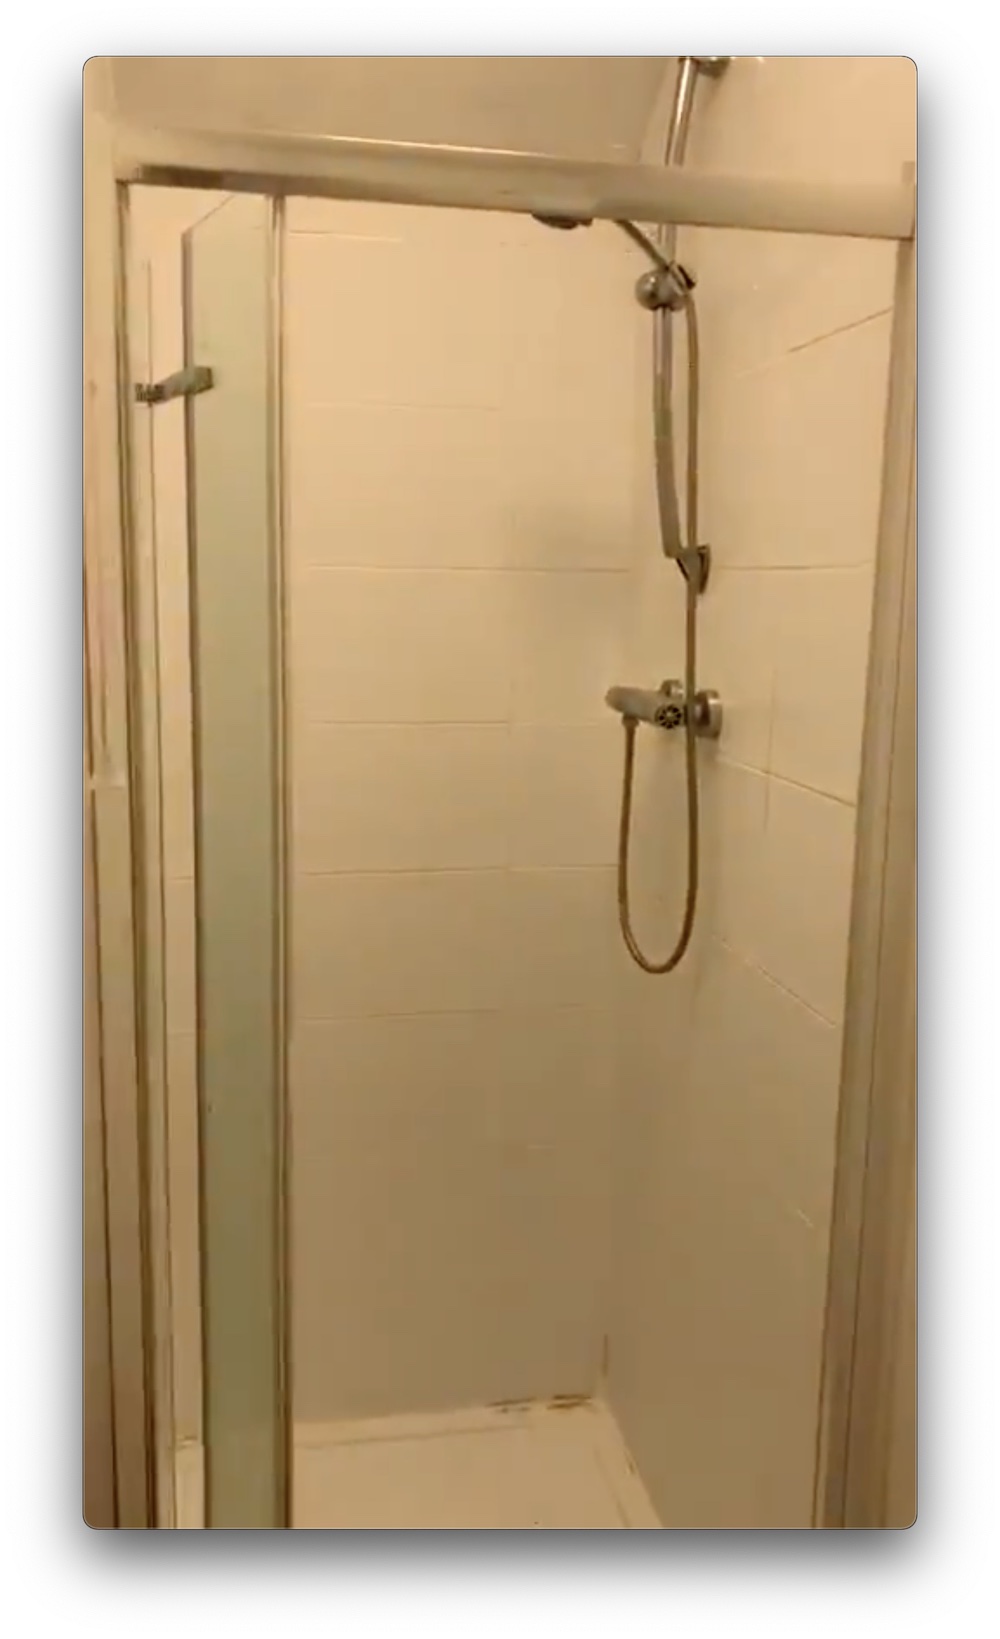 The original shower room